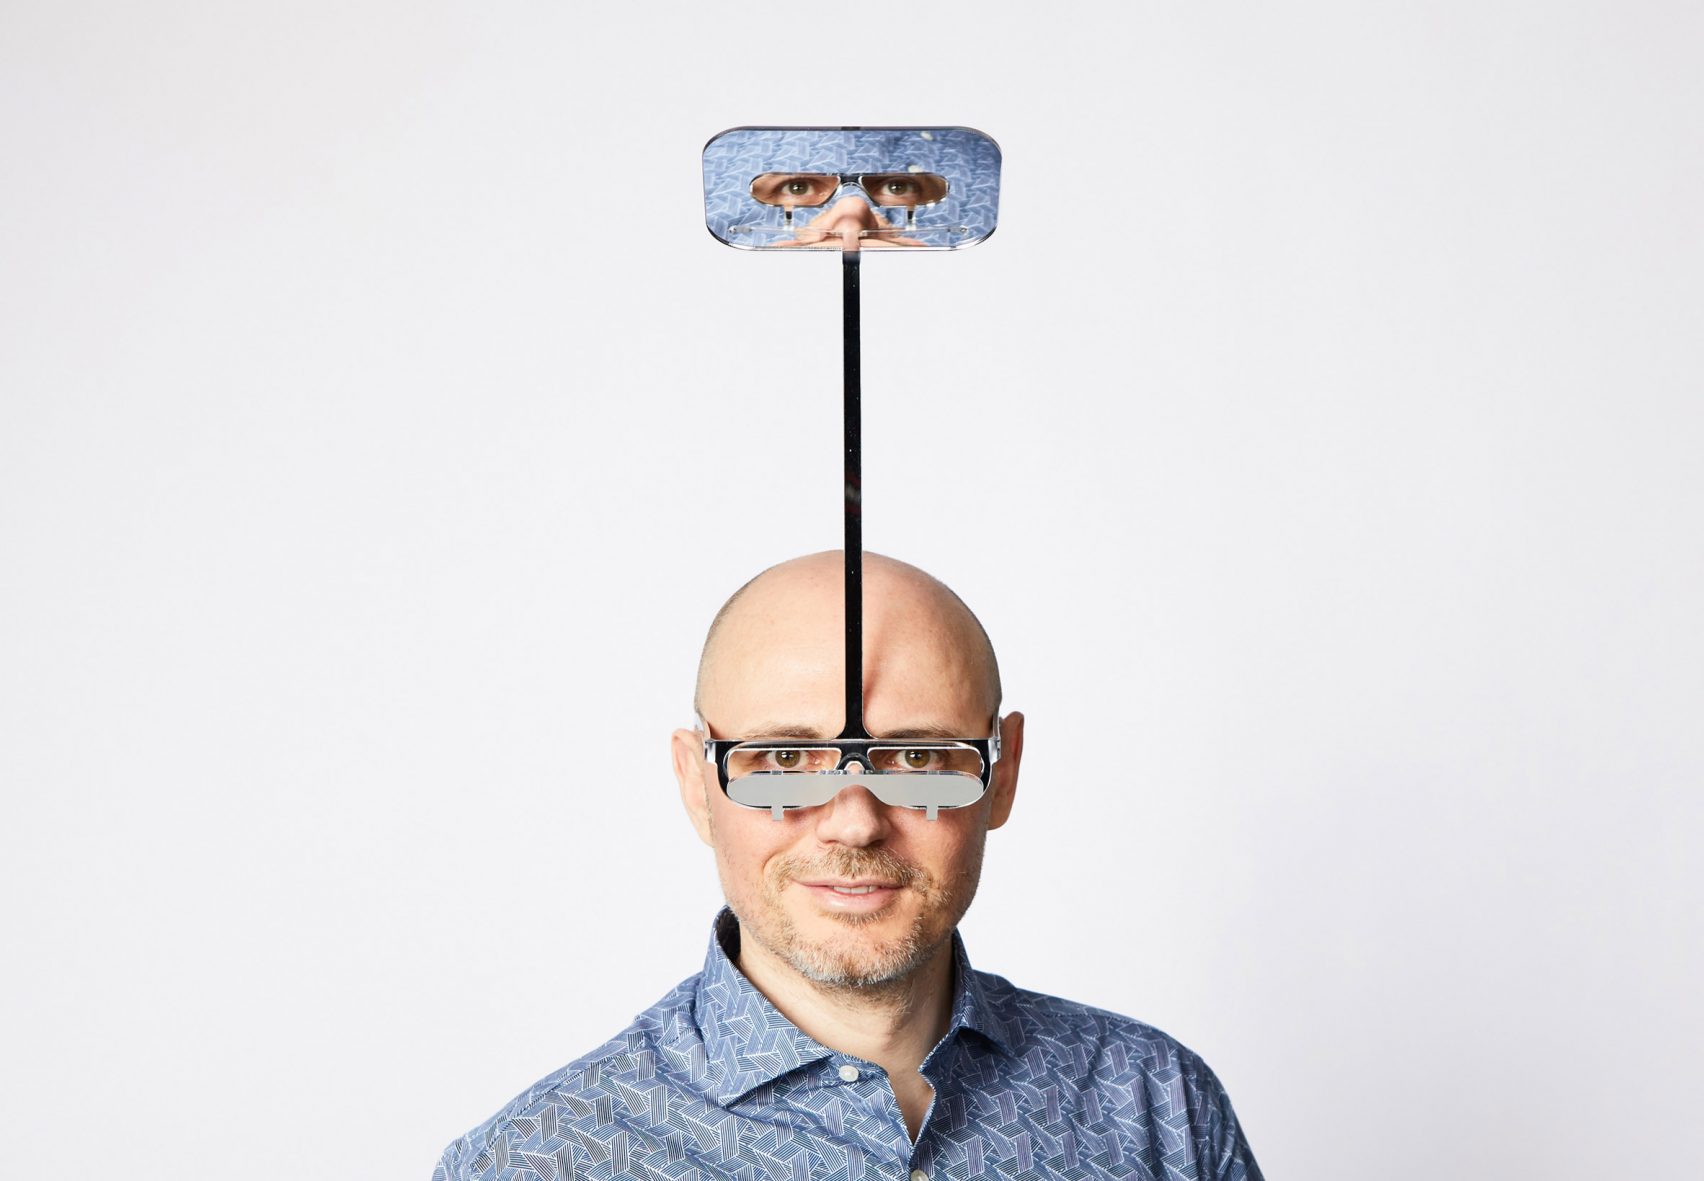 British designer, Dominic Wilcox creates periscope glasses for short people 